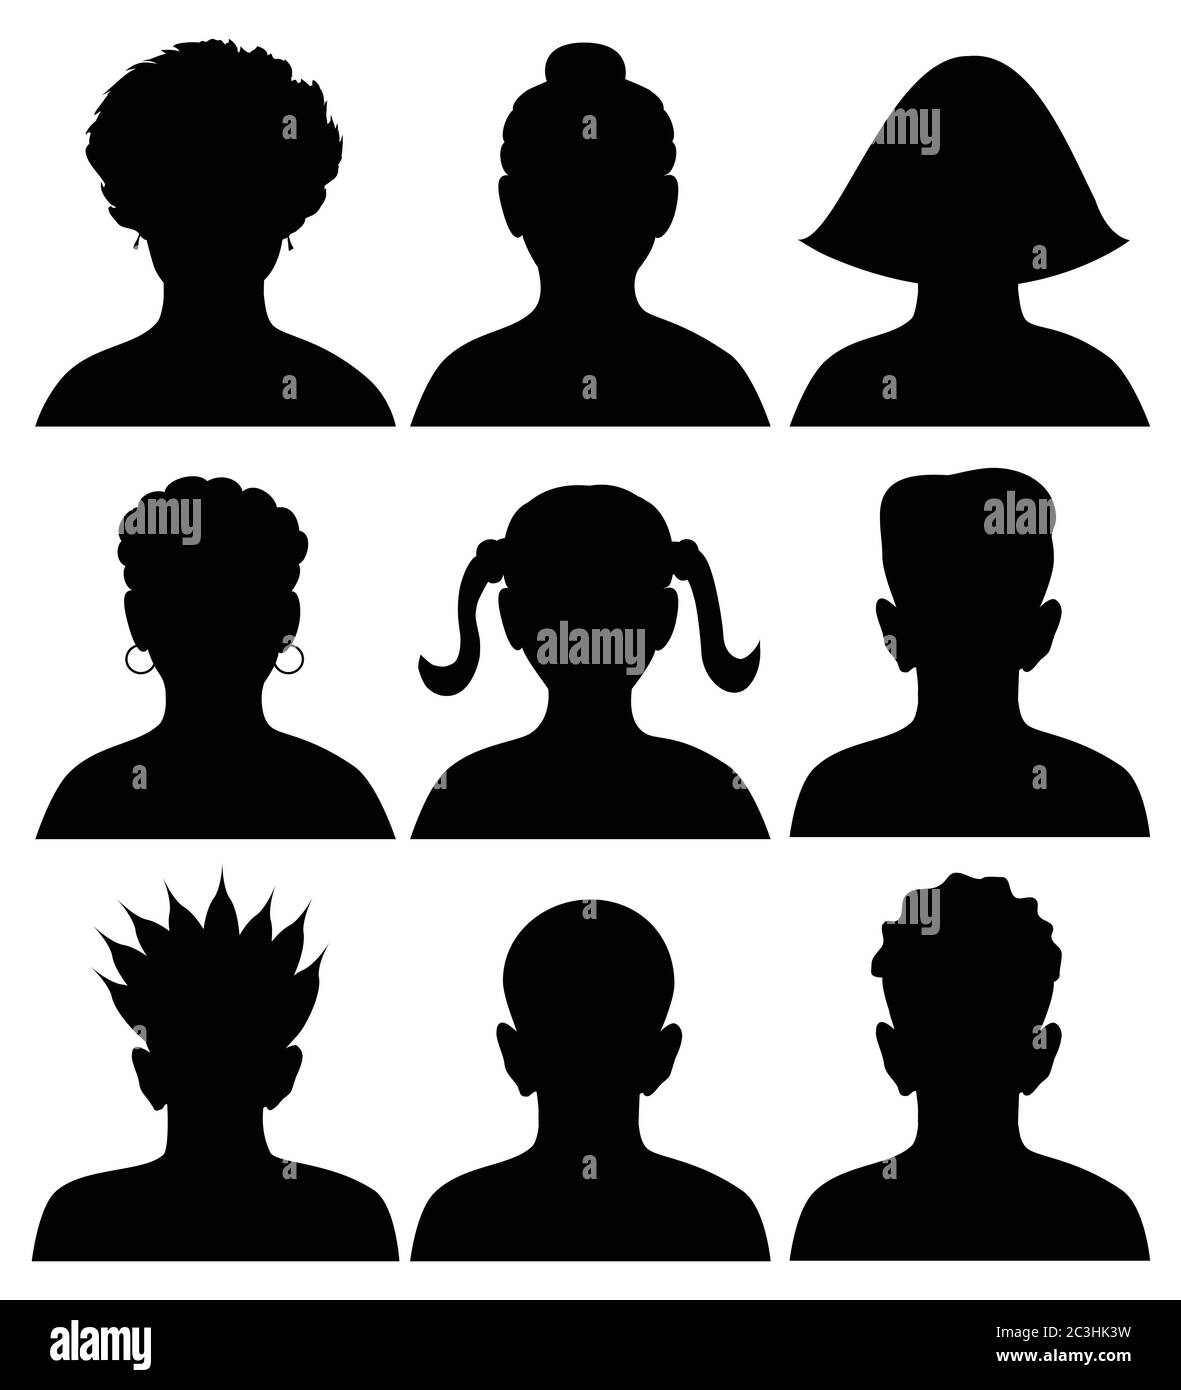 Set von 9 Silhouetten von Köpfen, anonyme Mugshot, Vektor-Illustration Stock Vektor